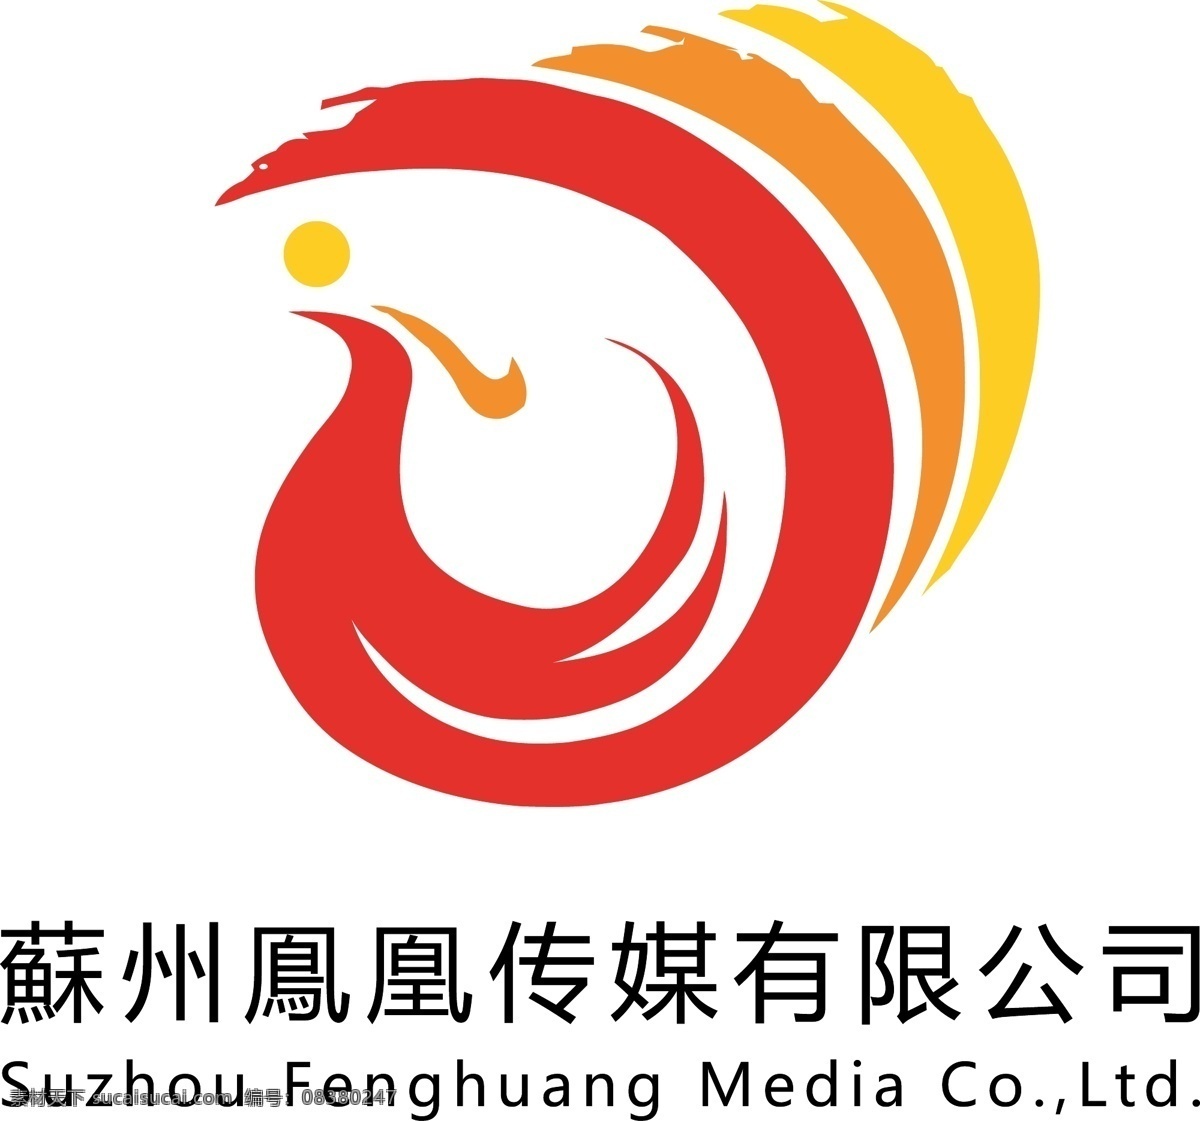 红黄色 苏州 鳯 凰 传媒 标志 鳯凰 传媒logo 苏州鳯凰 logo 鳯凰标志 传媒标志